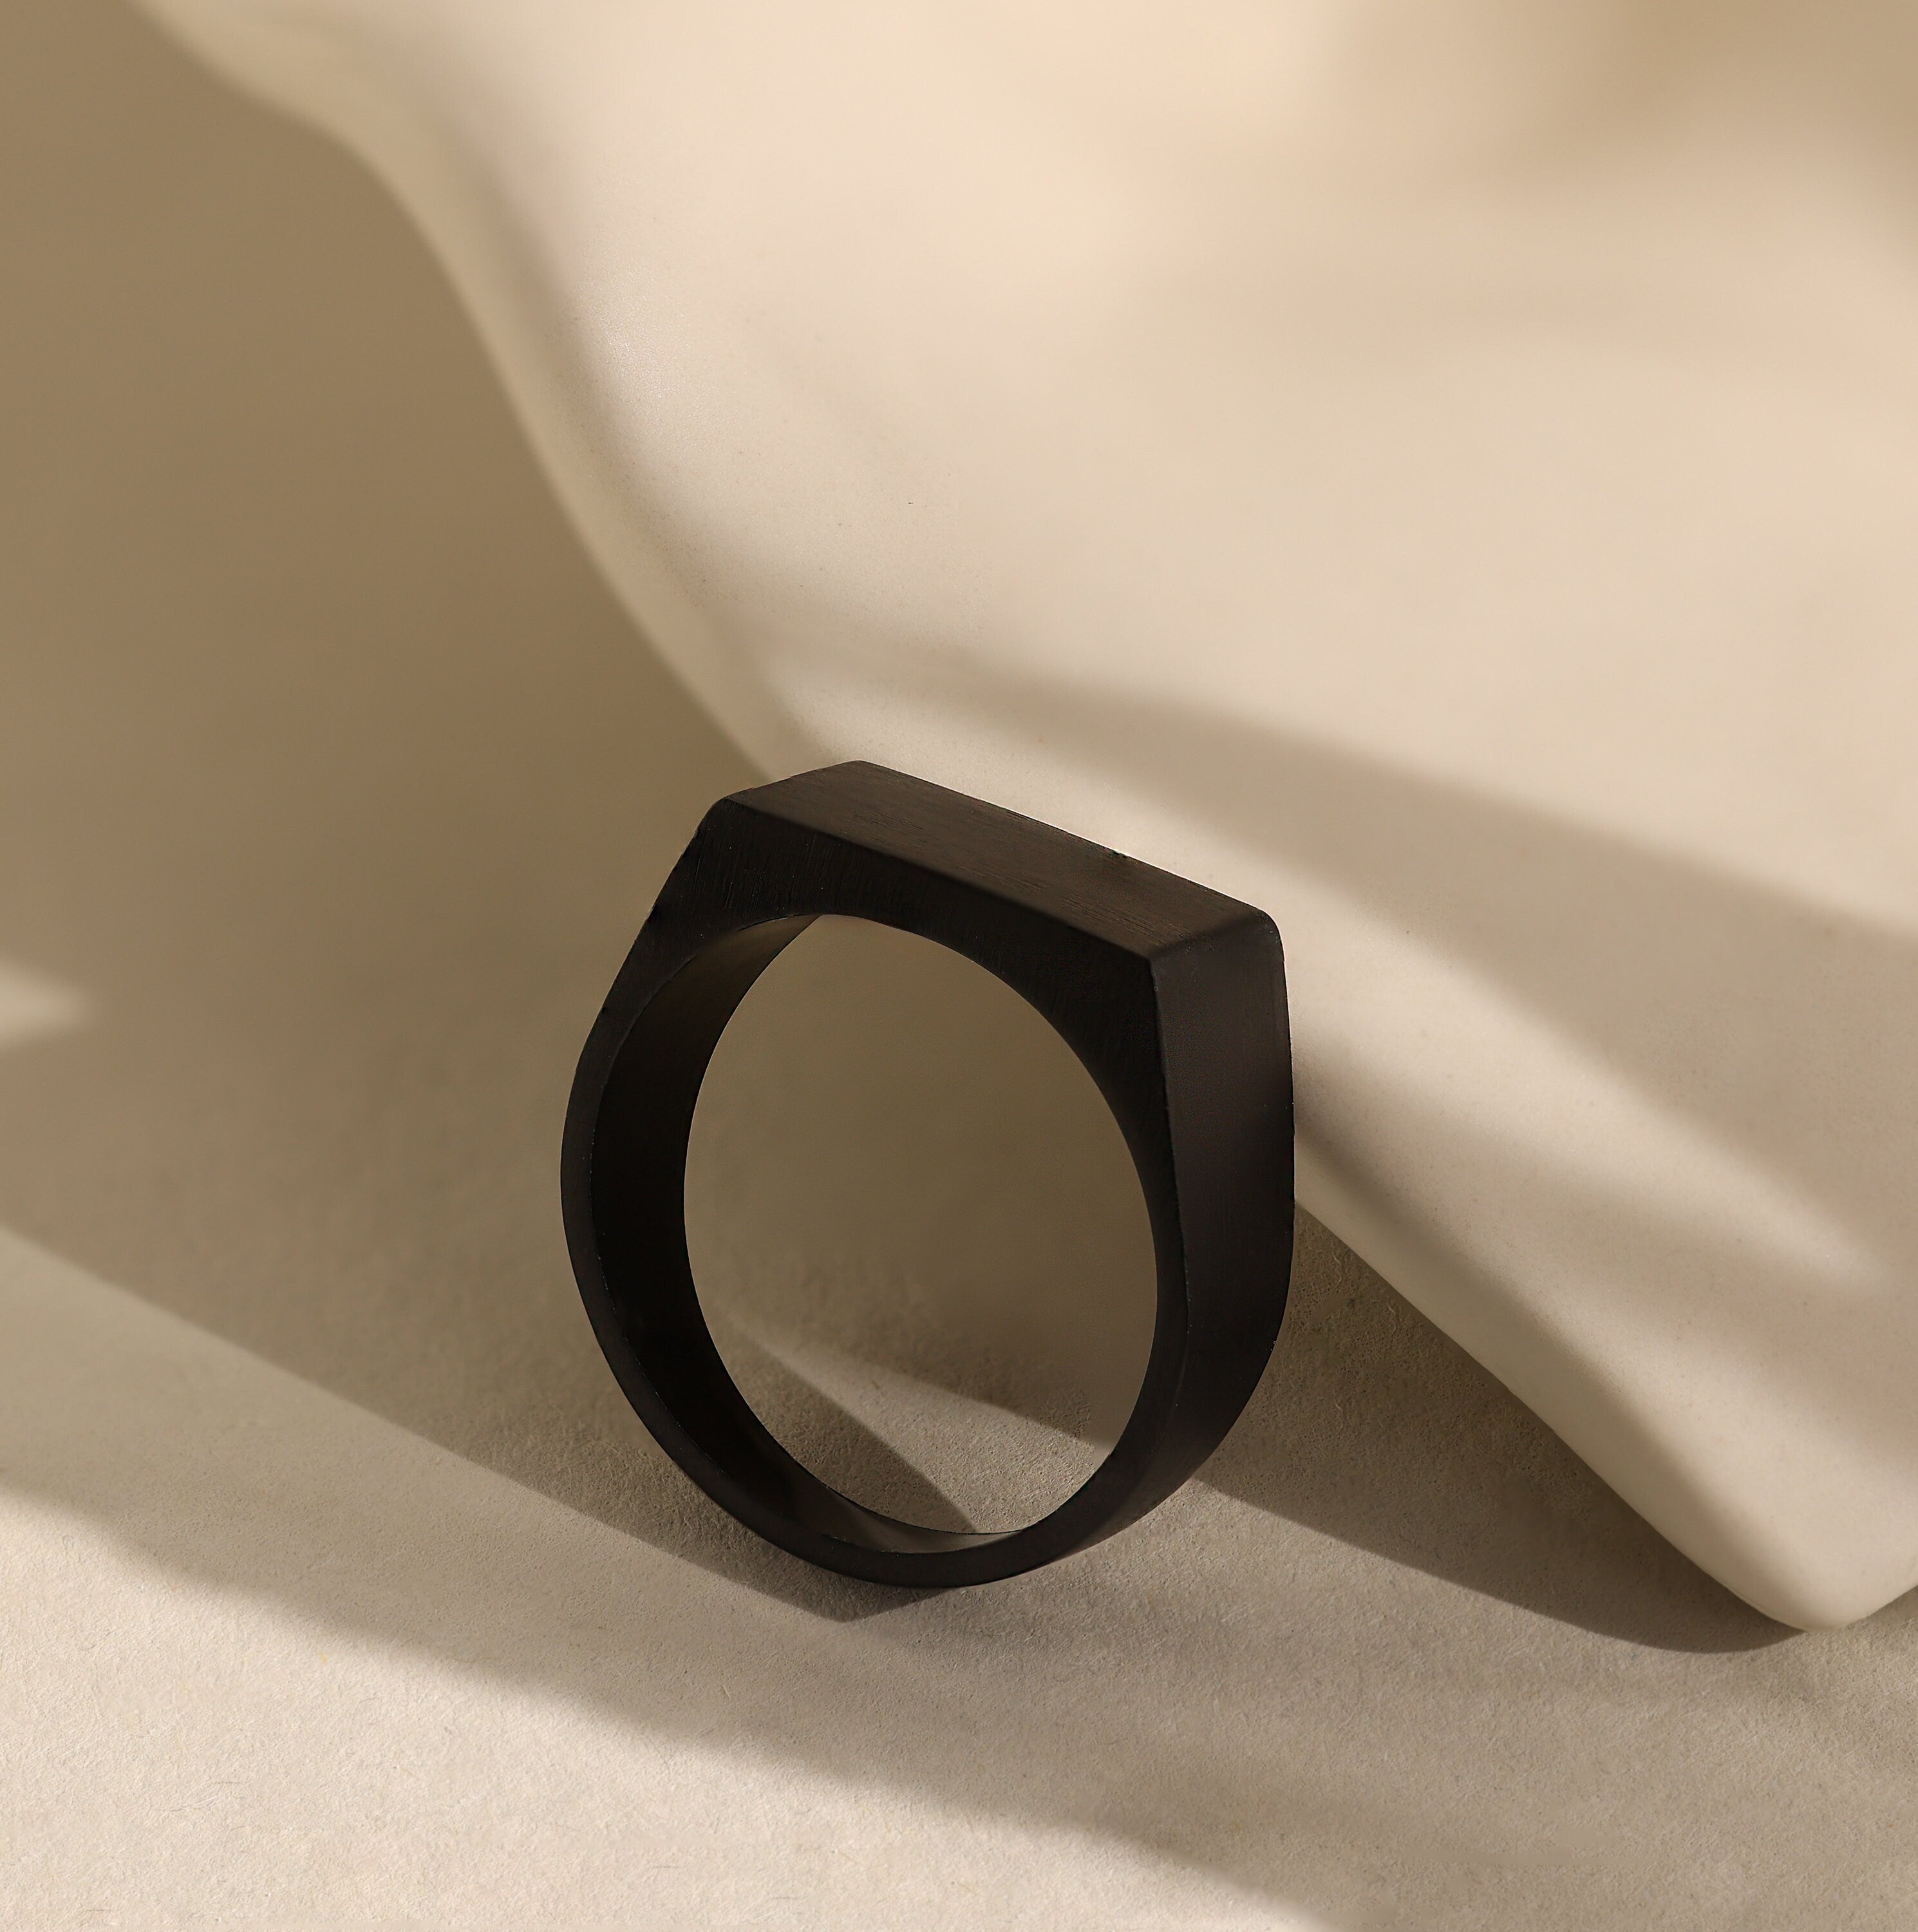 Men's Carbon Fiber Ring | Thin Black Wedding Rings for Men – E6 Rings